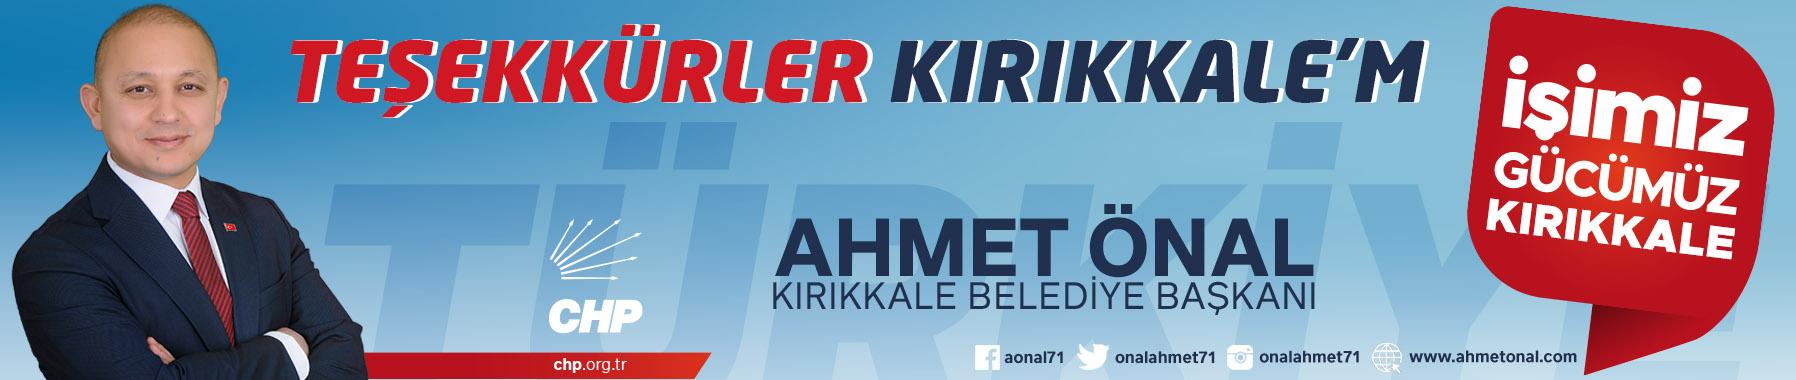 Ahmet Önal | Kırıkkale Belediye Başkanı - Kırıkkale Haber, Son Dakika Kırıkkale Haberleri